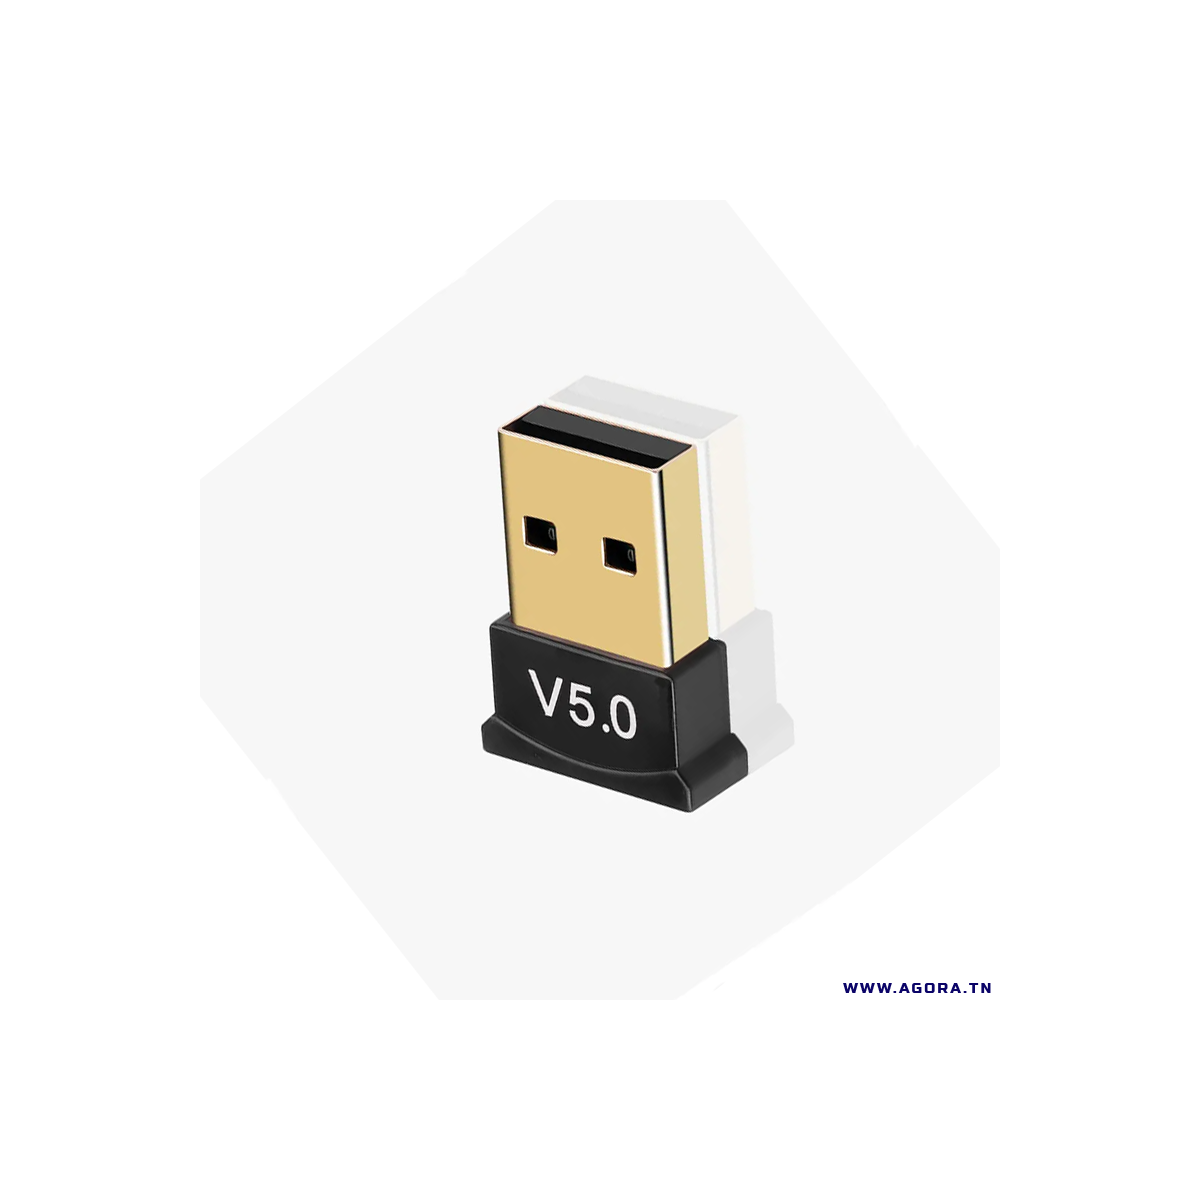 MINI ADAPTATEUR BLUETOOTH USB 5.0  | Agora.tn